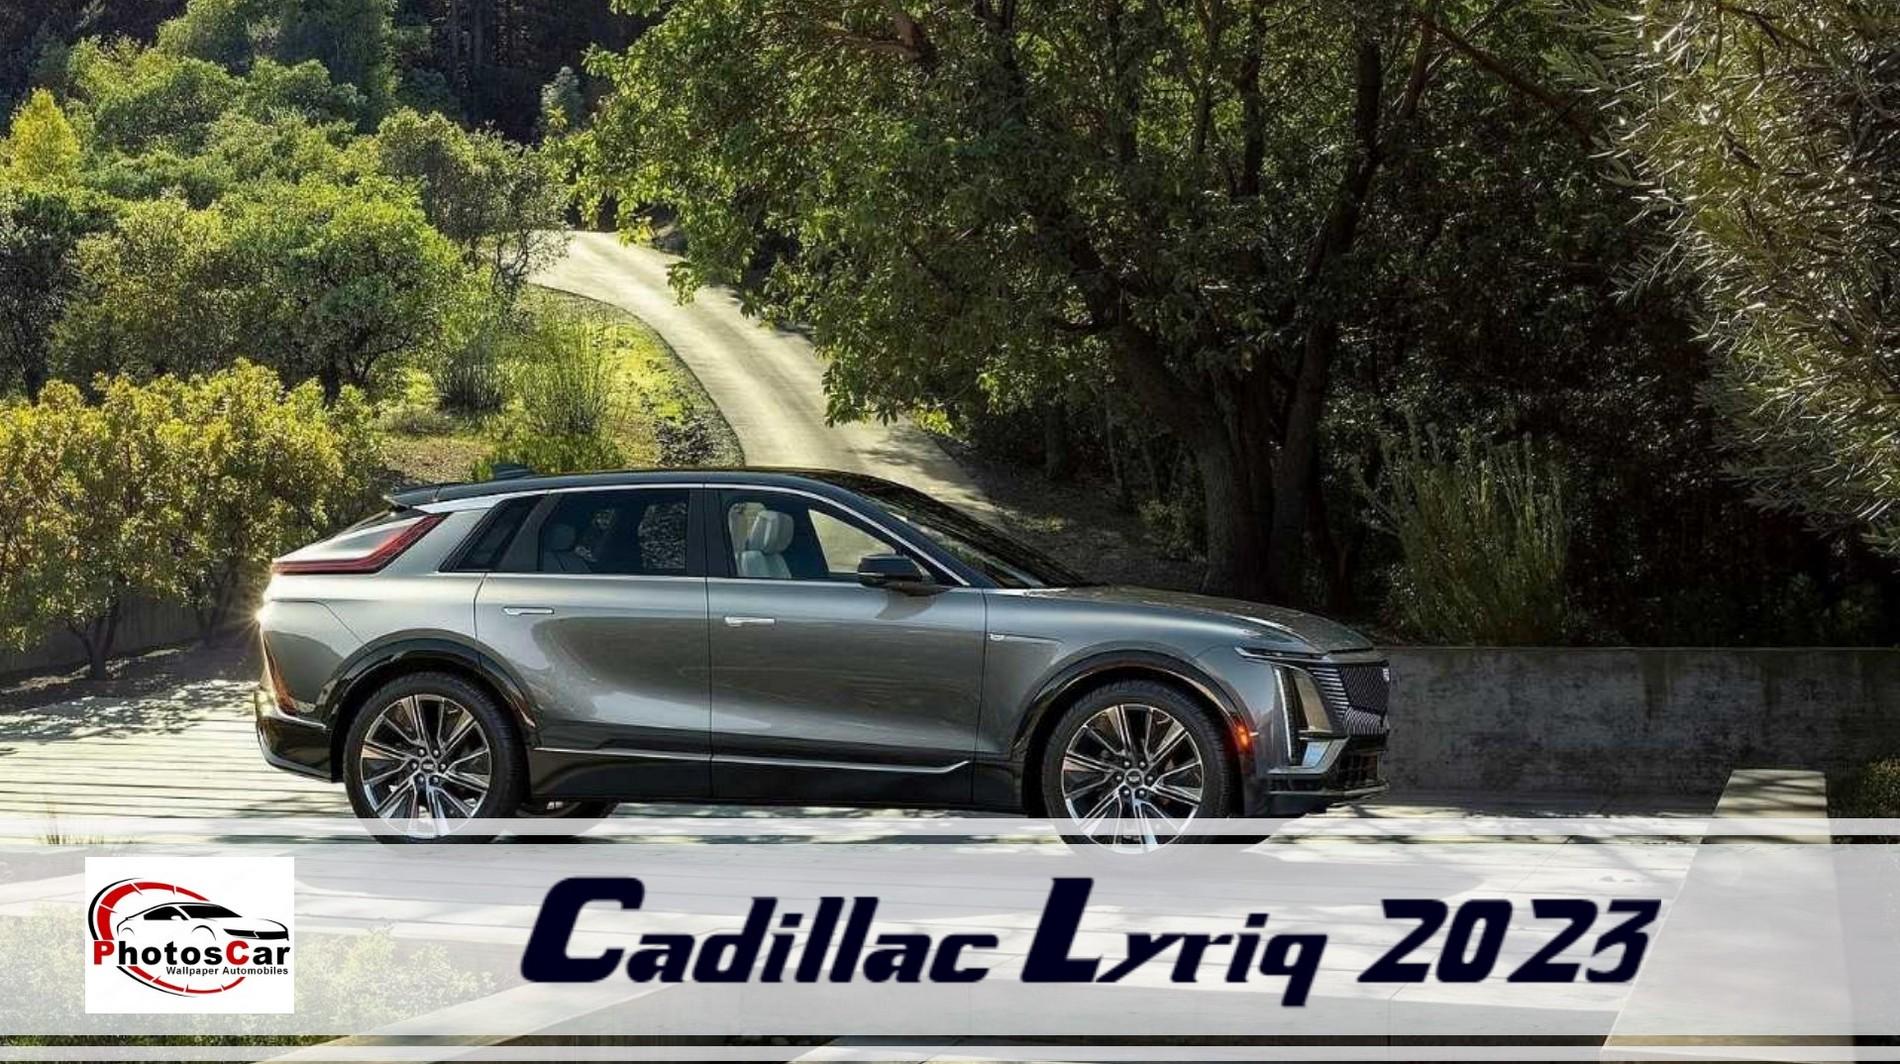 Cadillac Lyriq 2023